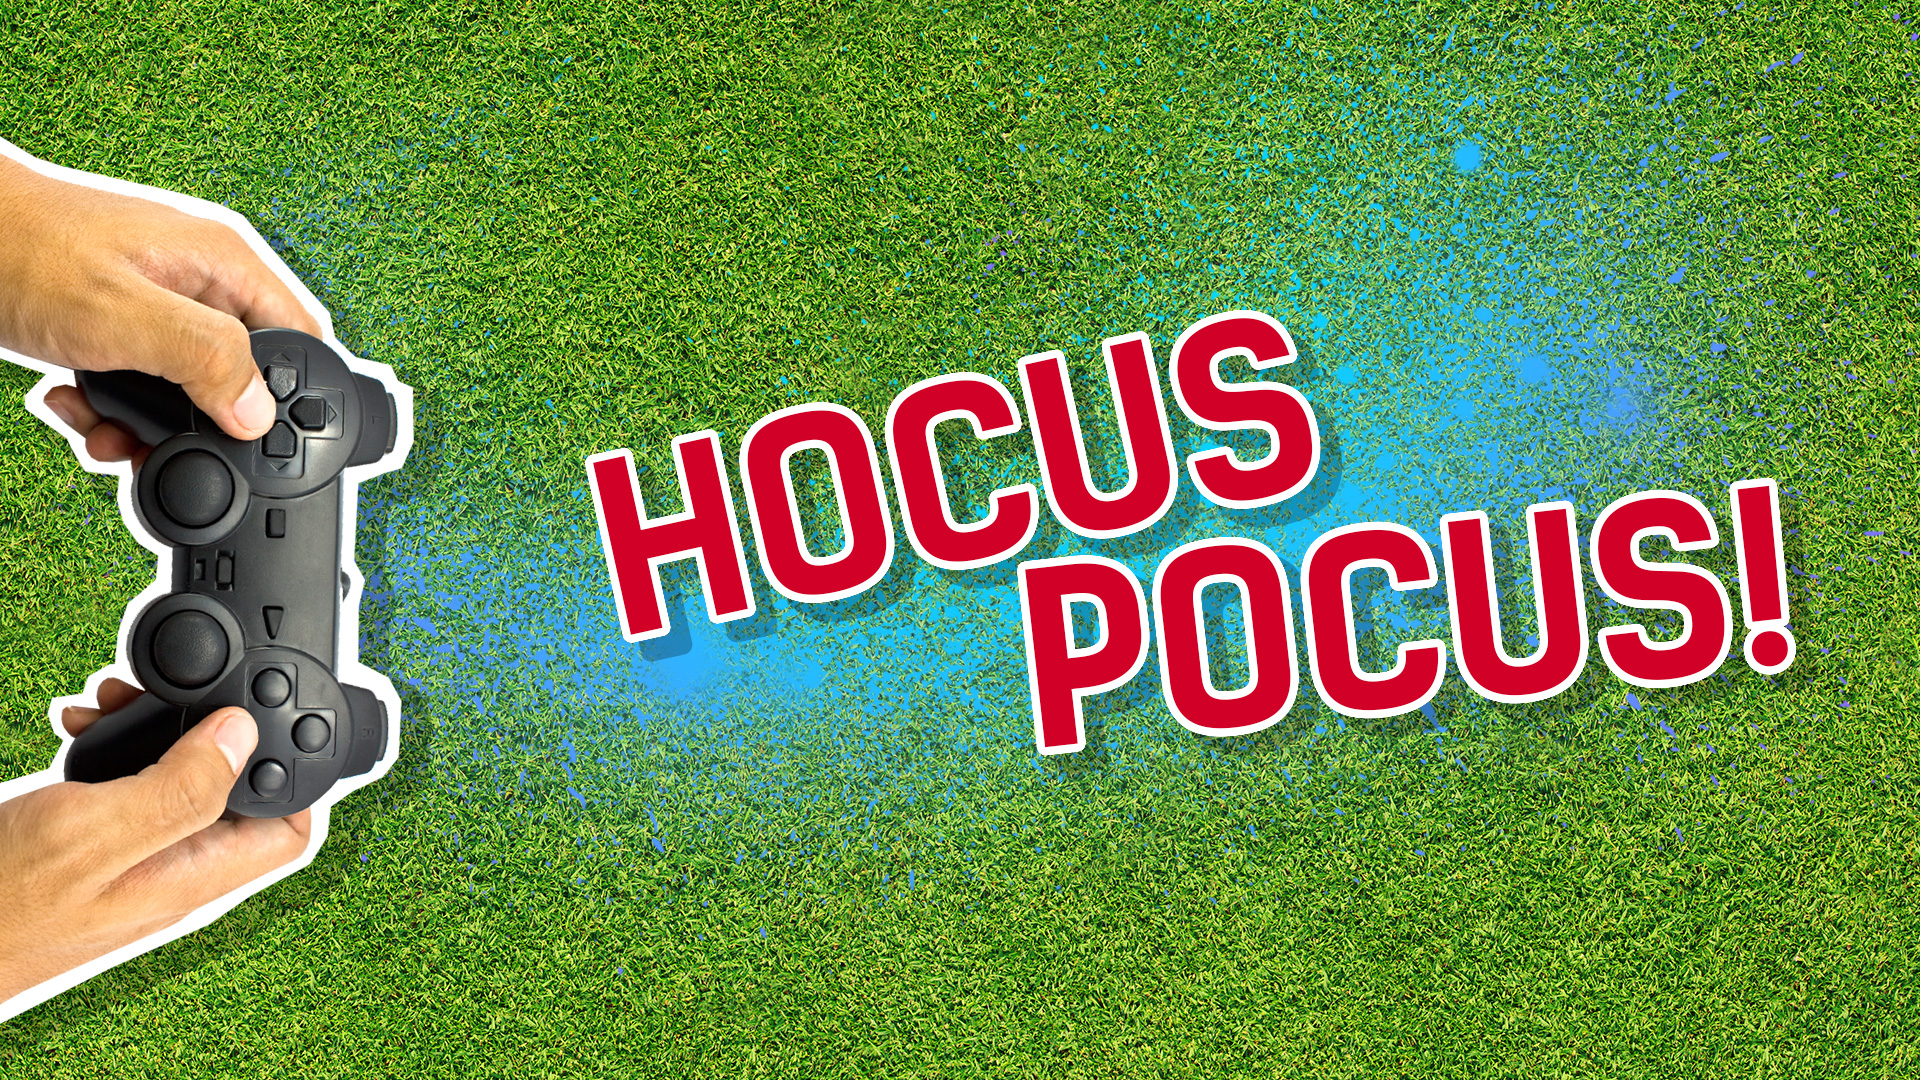 Result: Hocus Pocus